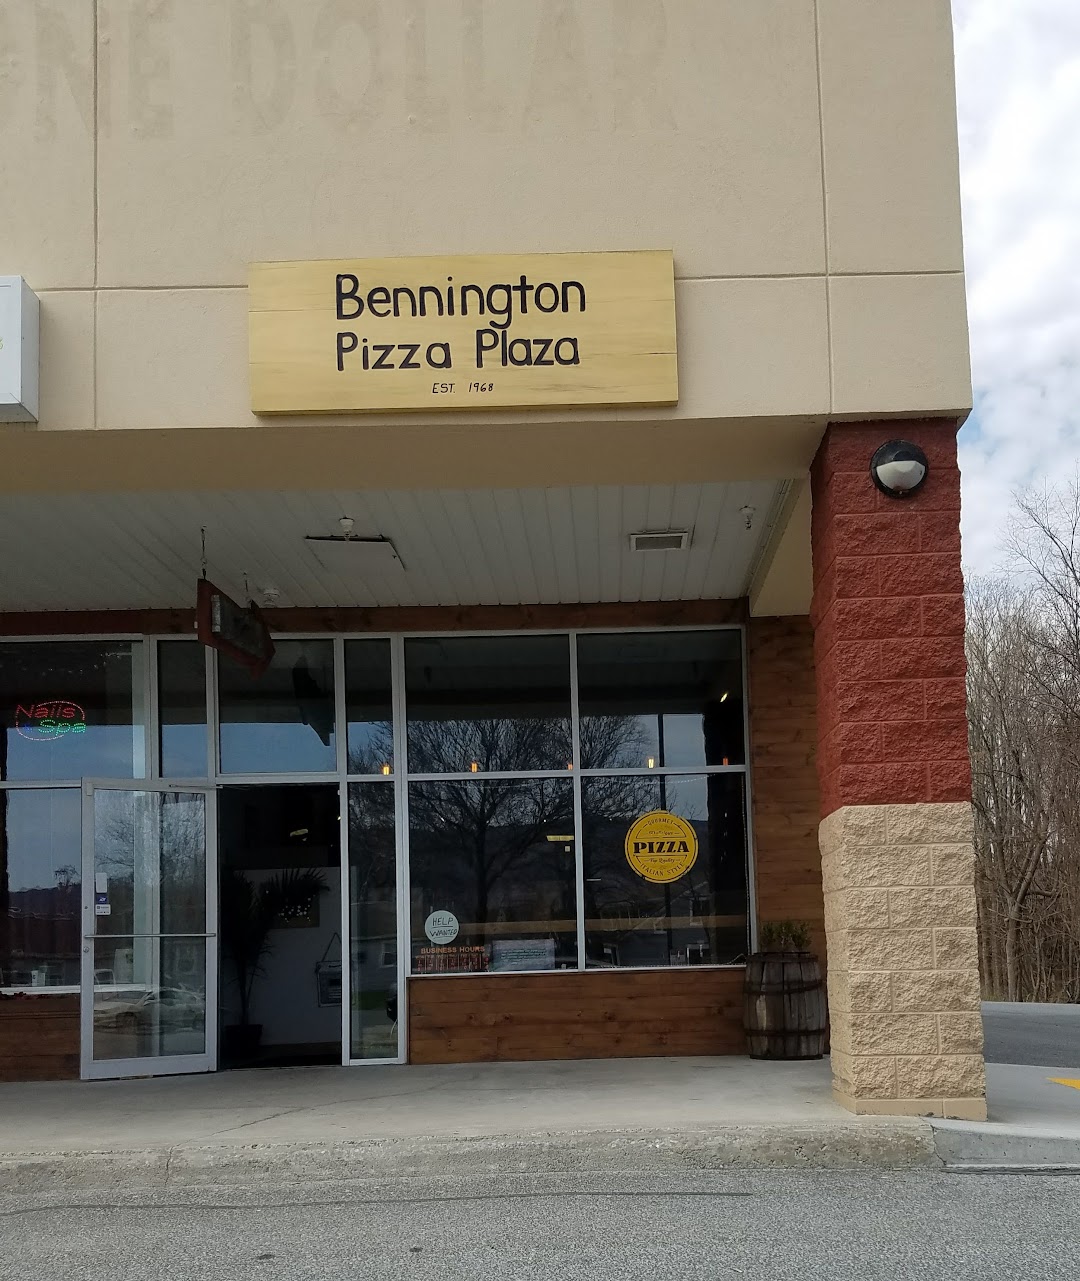 Bennington Pizza Plaza